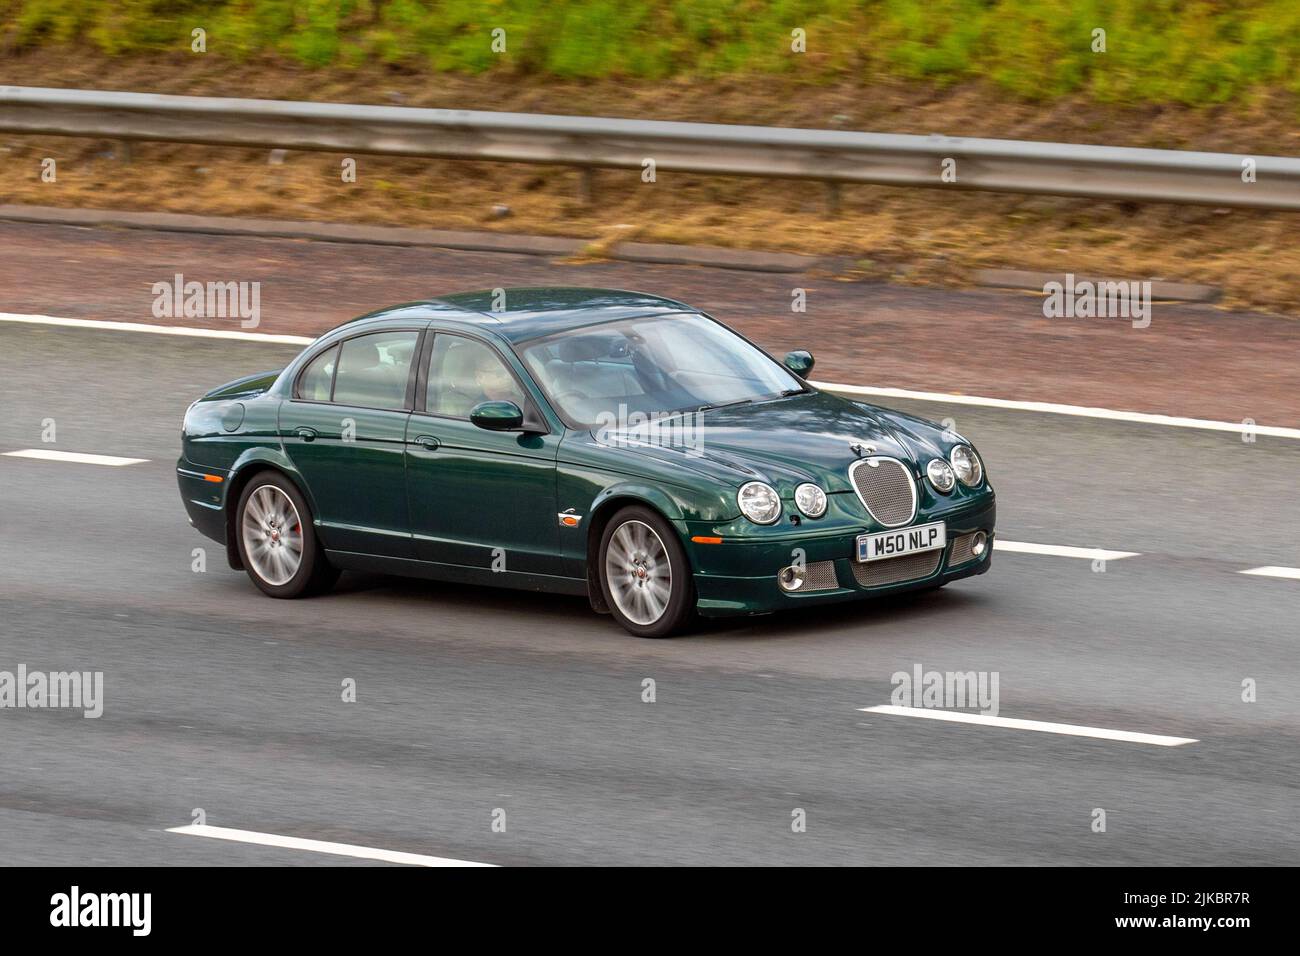 2006 Green British Jaguar S-Type V6 Sport 2720cc Diesel 6-Gang-Automatik; in Bewegung, gefahren, in Bewegung, auf der Autobahn M6, Großbritannien Stockfoto